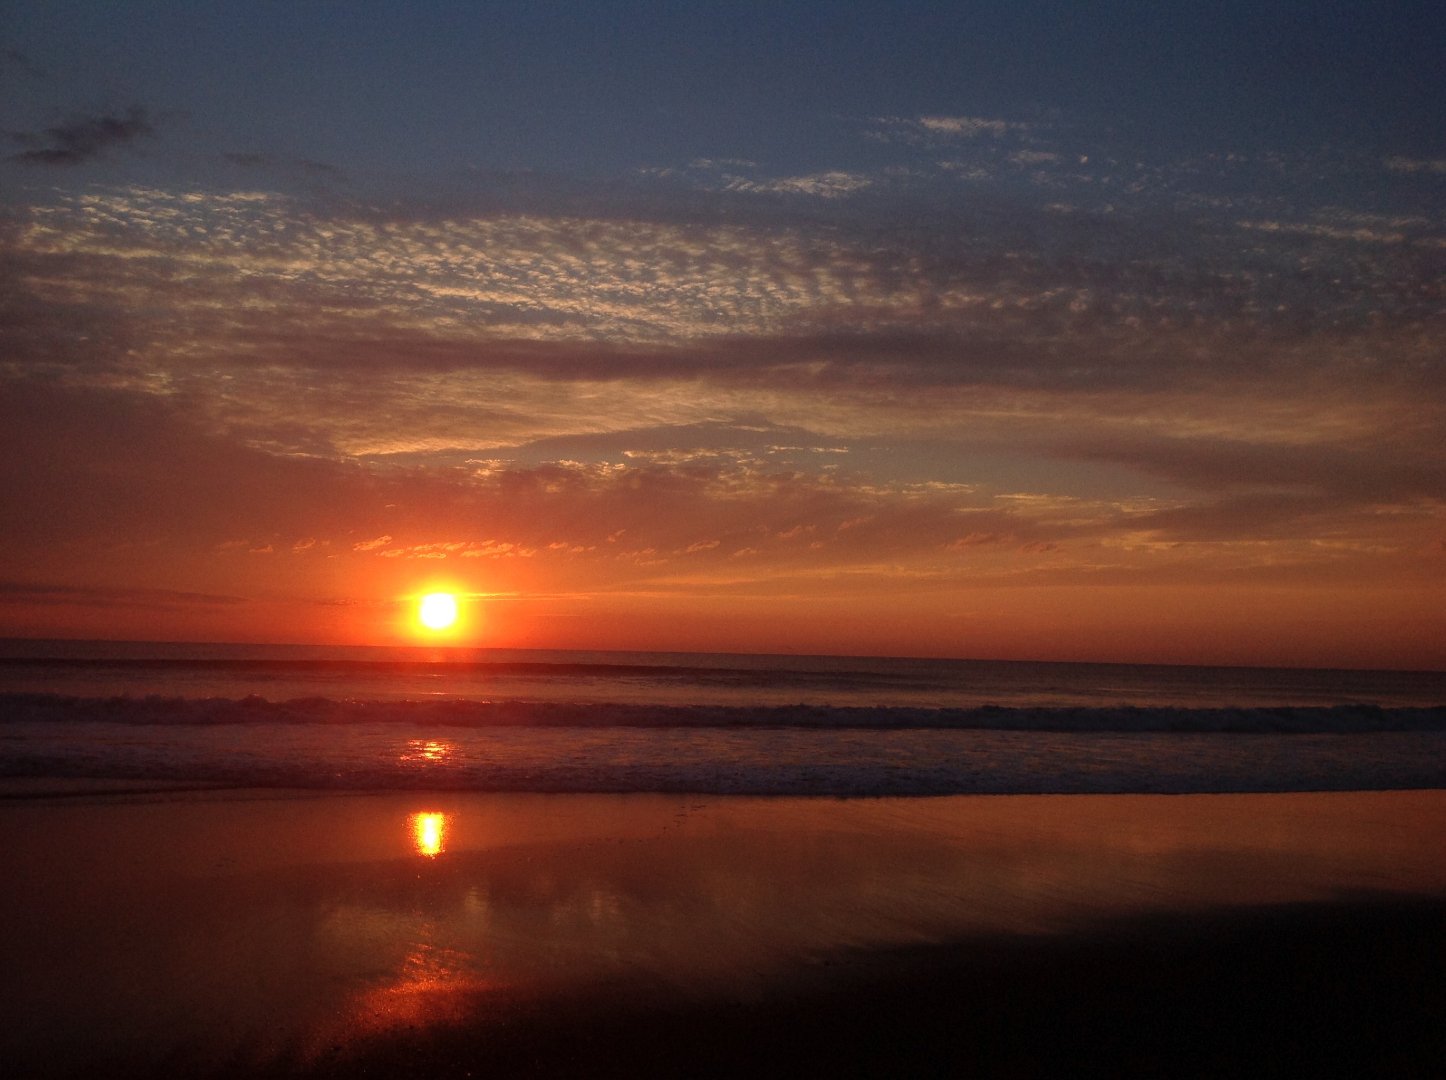 sunrise on a beach